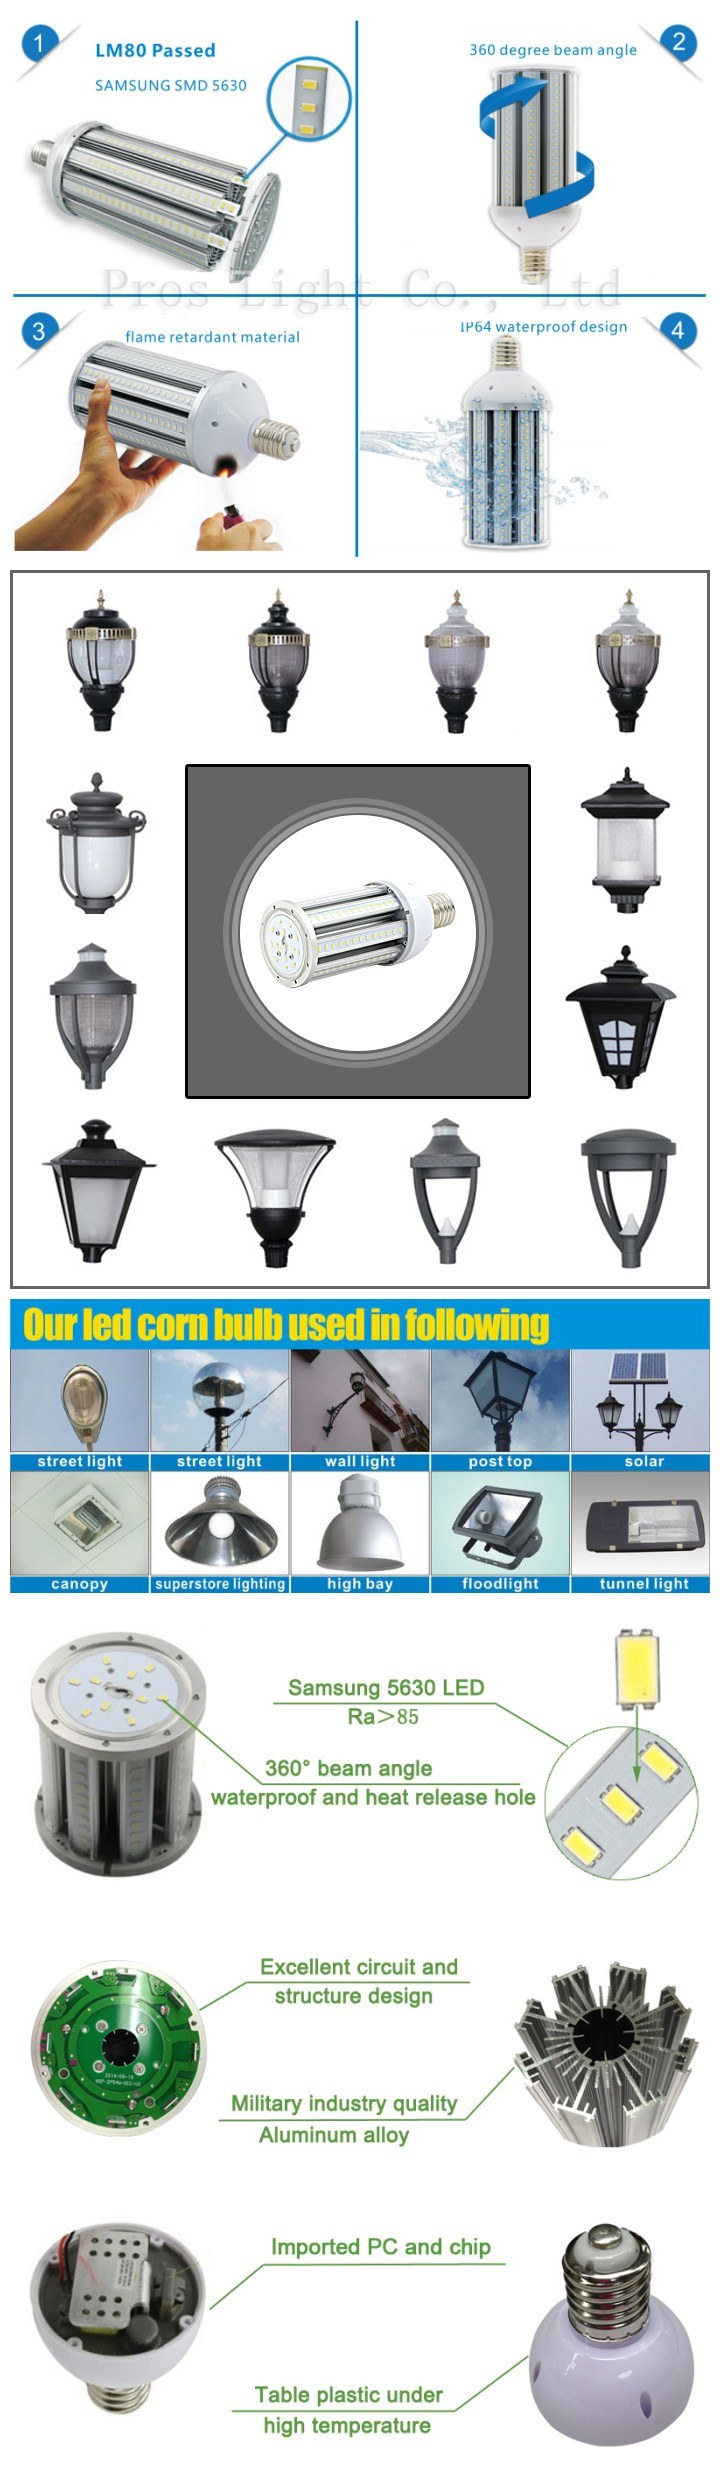 LED Corn Bulb Lamp for Garden/Yard/Street Lighting